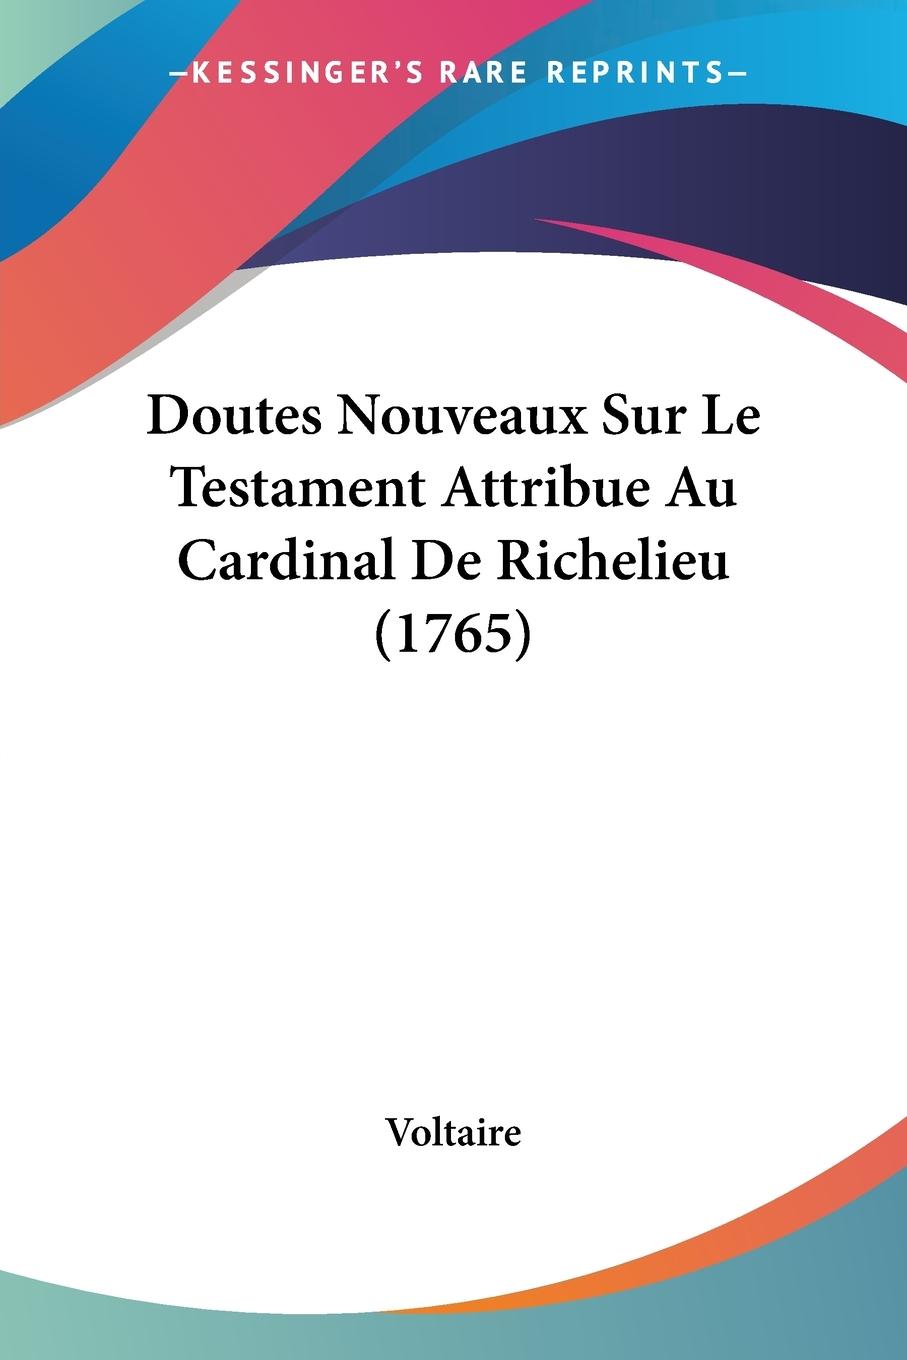 Doutes Nouveaux Sur Le Testament Attribue Au Cardinal De Richelieu (1765) - Voltaire